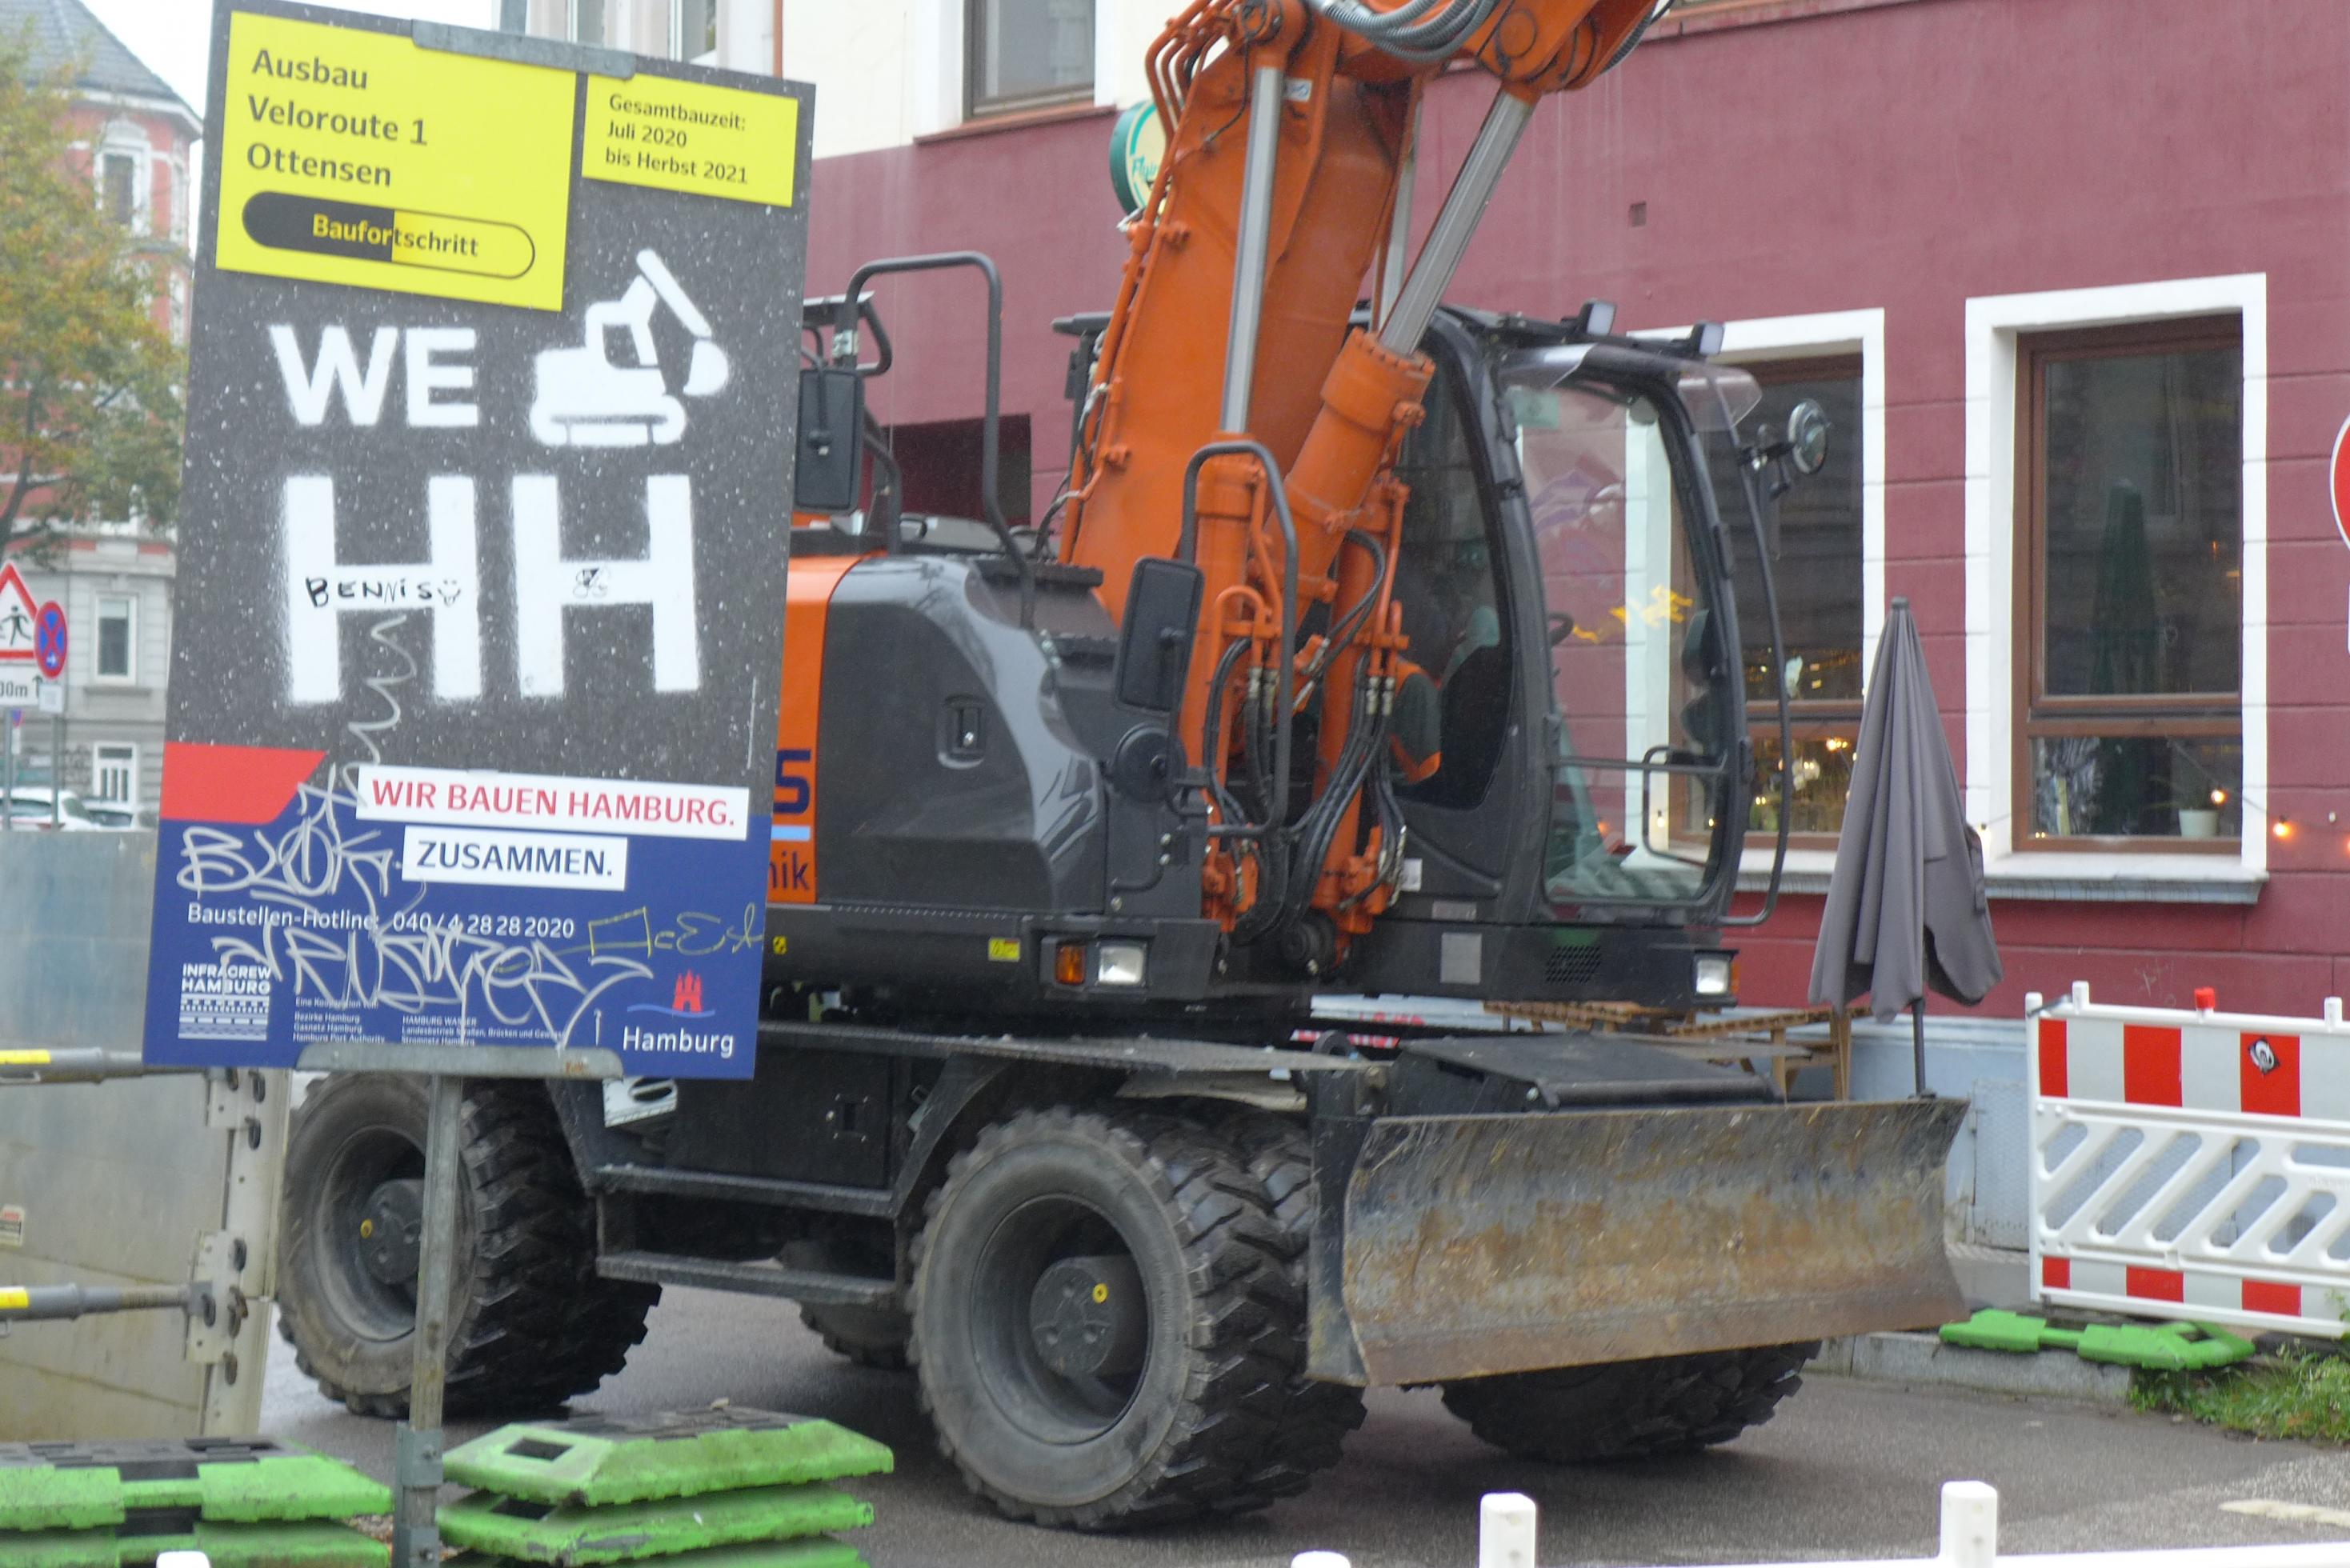 Ein orangefarbener mittelgroßer Schaufelbagger fährt hinter einem Schild vorbei. Die Tafel beschreibt den Baufortschritt der Veloroute Hamburg. Auf einem gelben Papier steht: Ausbau Veloroute 1 Ottensen. Unten steht in rot und blau: Wir bauen Hamburg – zusammen. Das Schild ist mit Graffiti beschmiert.